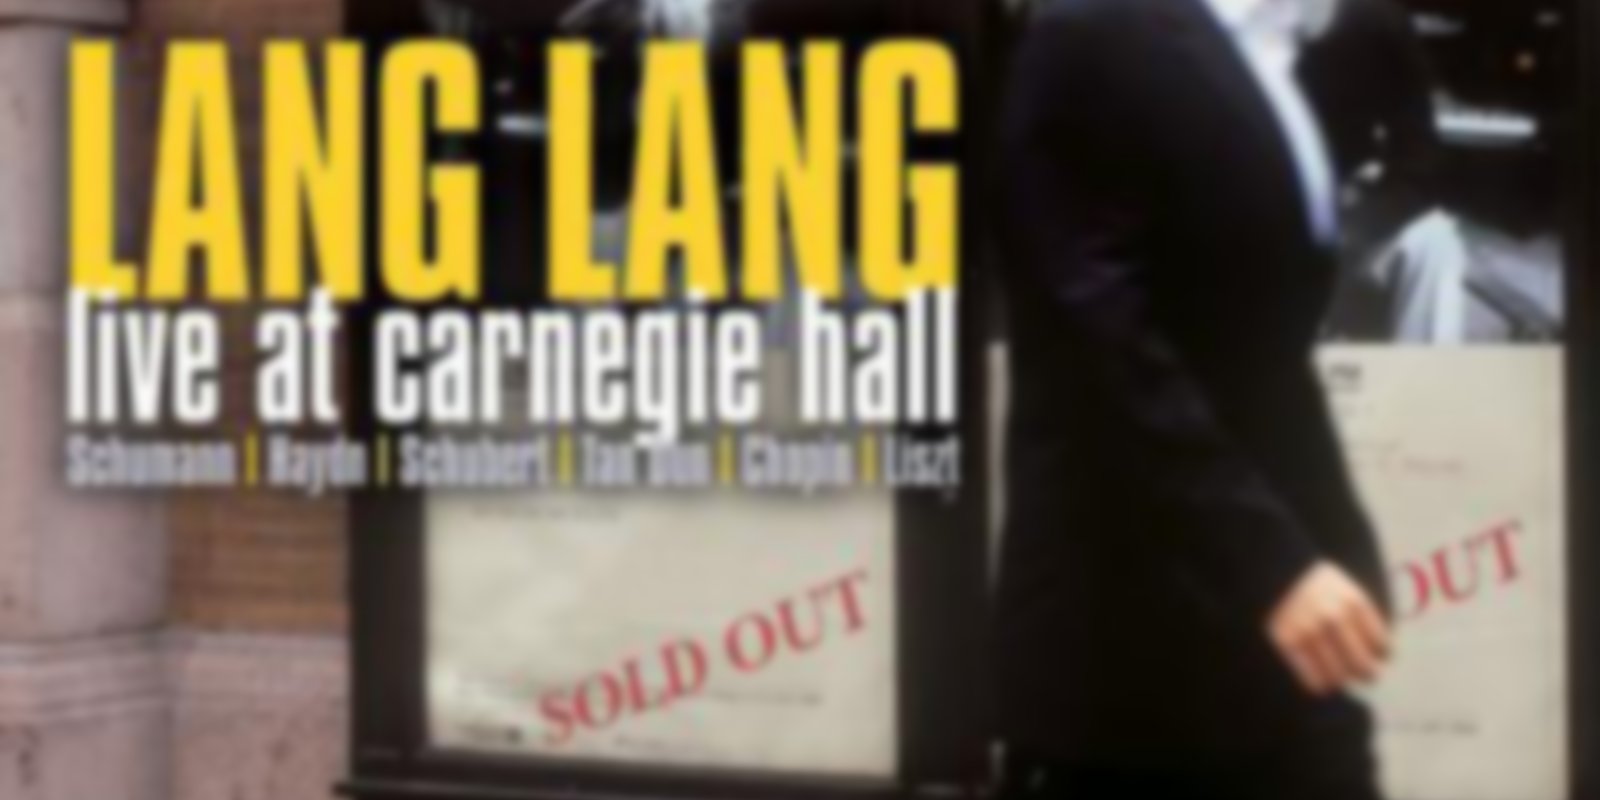 Lang Lang - Live at Carnegie Hall